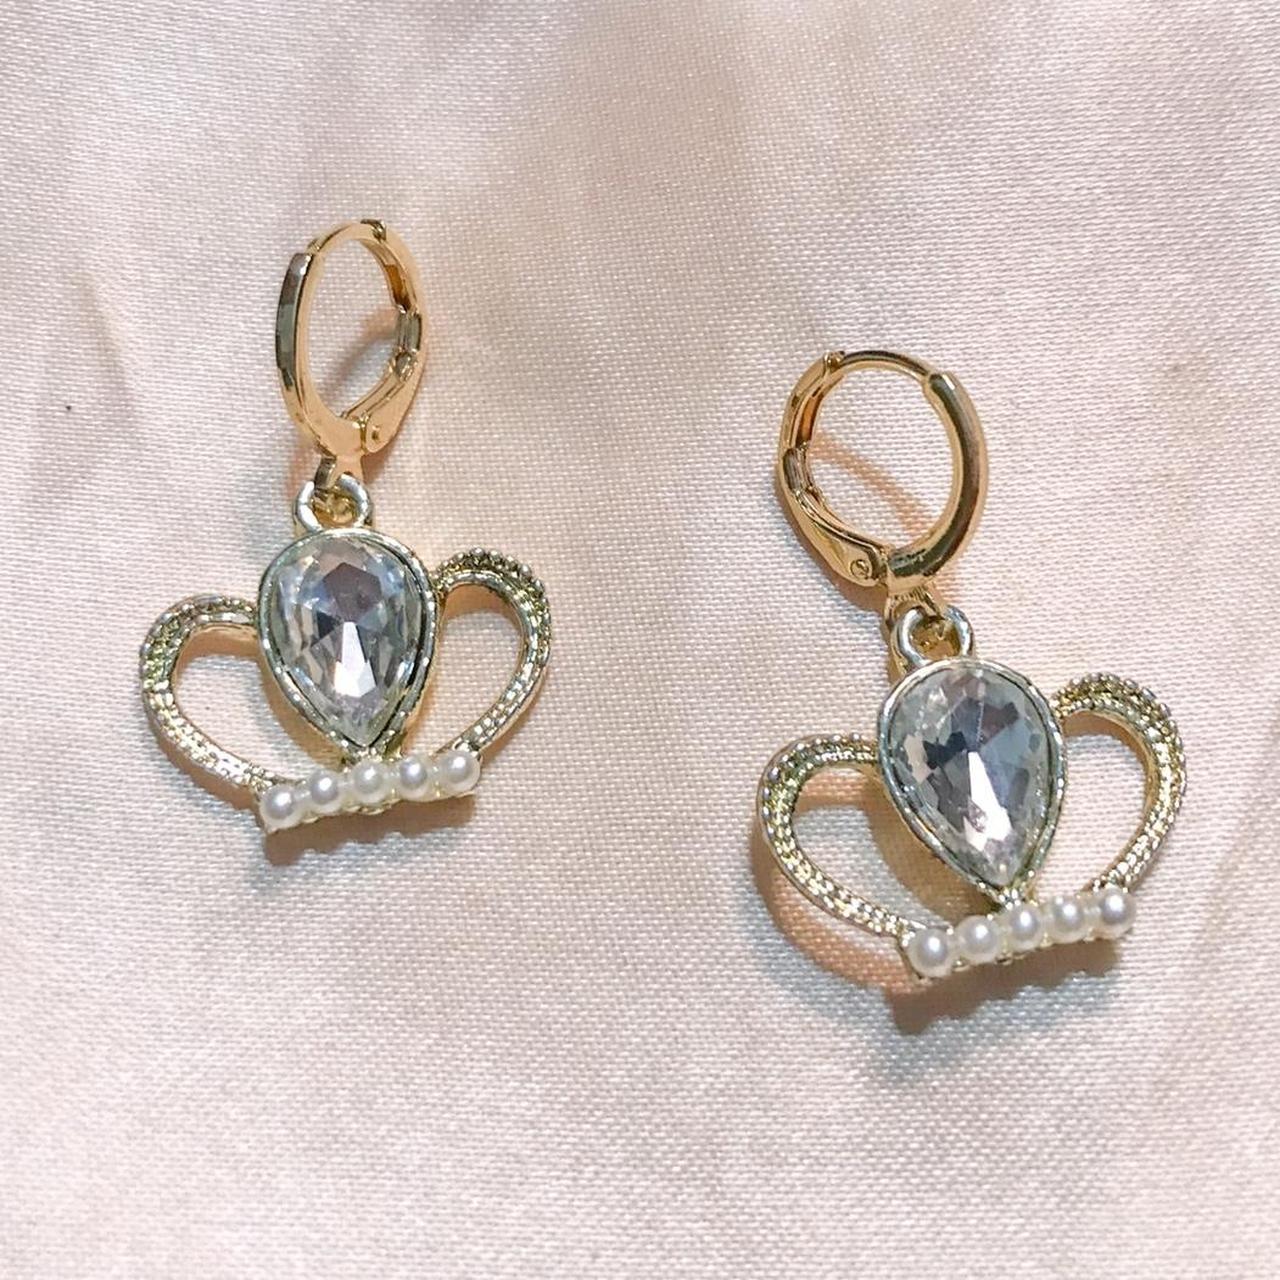 tiara earrings 14k gold plated huggies suitable for... - Depop